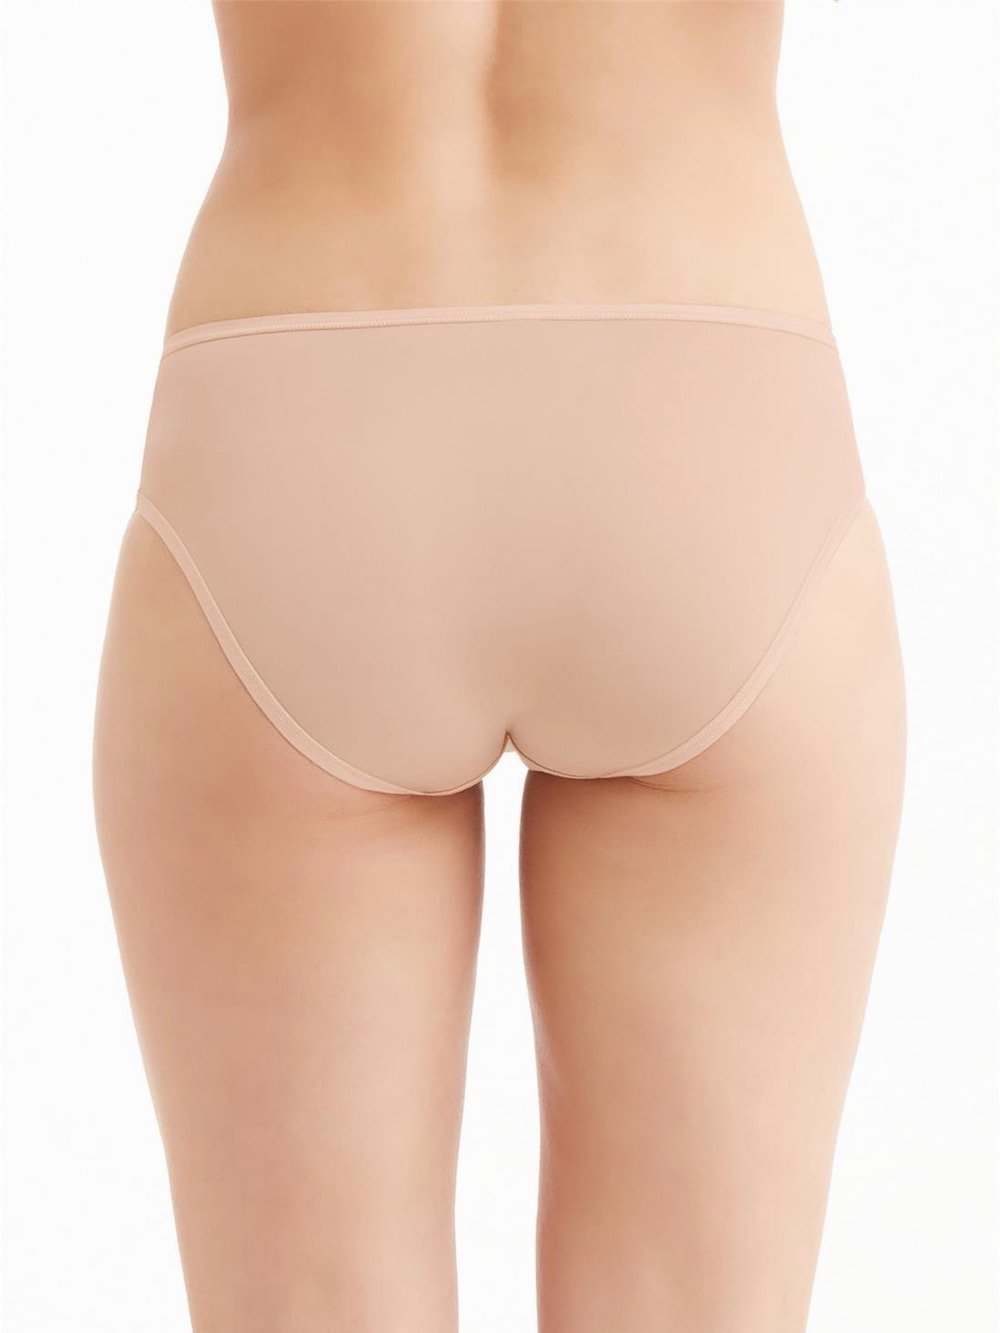 Montelle Intimates Panties S / Nude High Cut Brief Panties